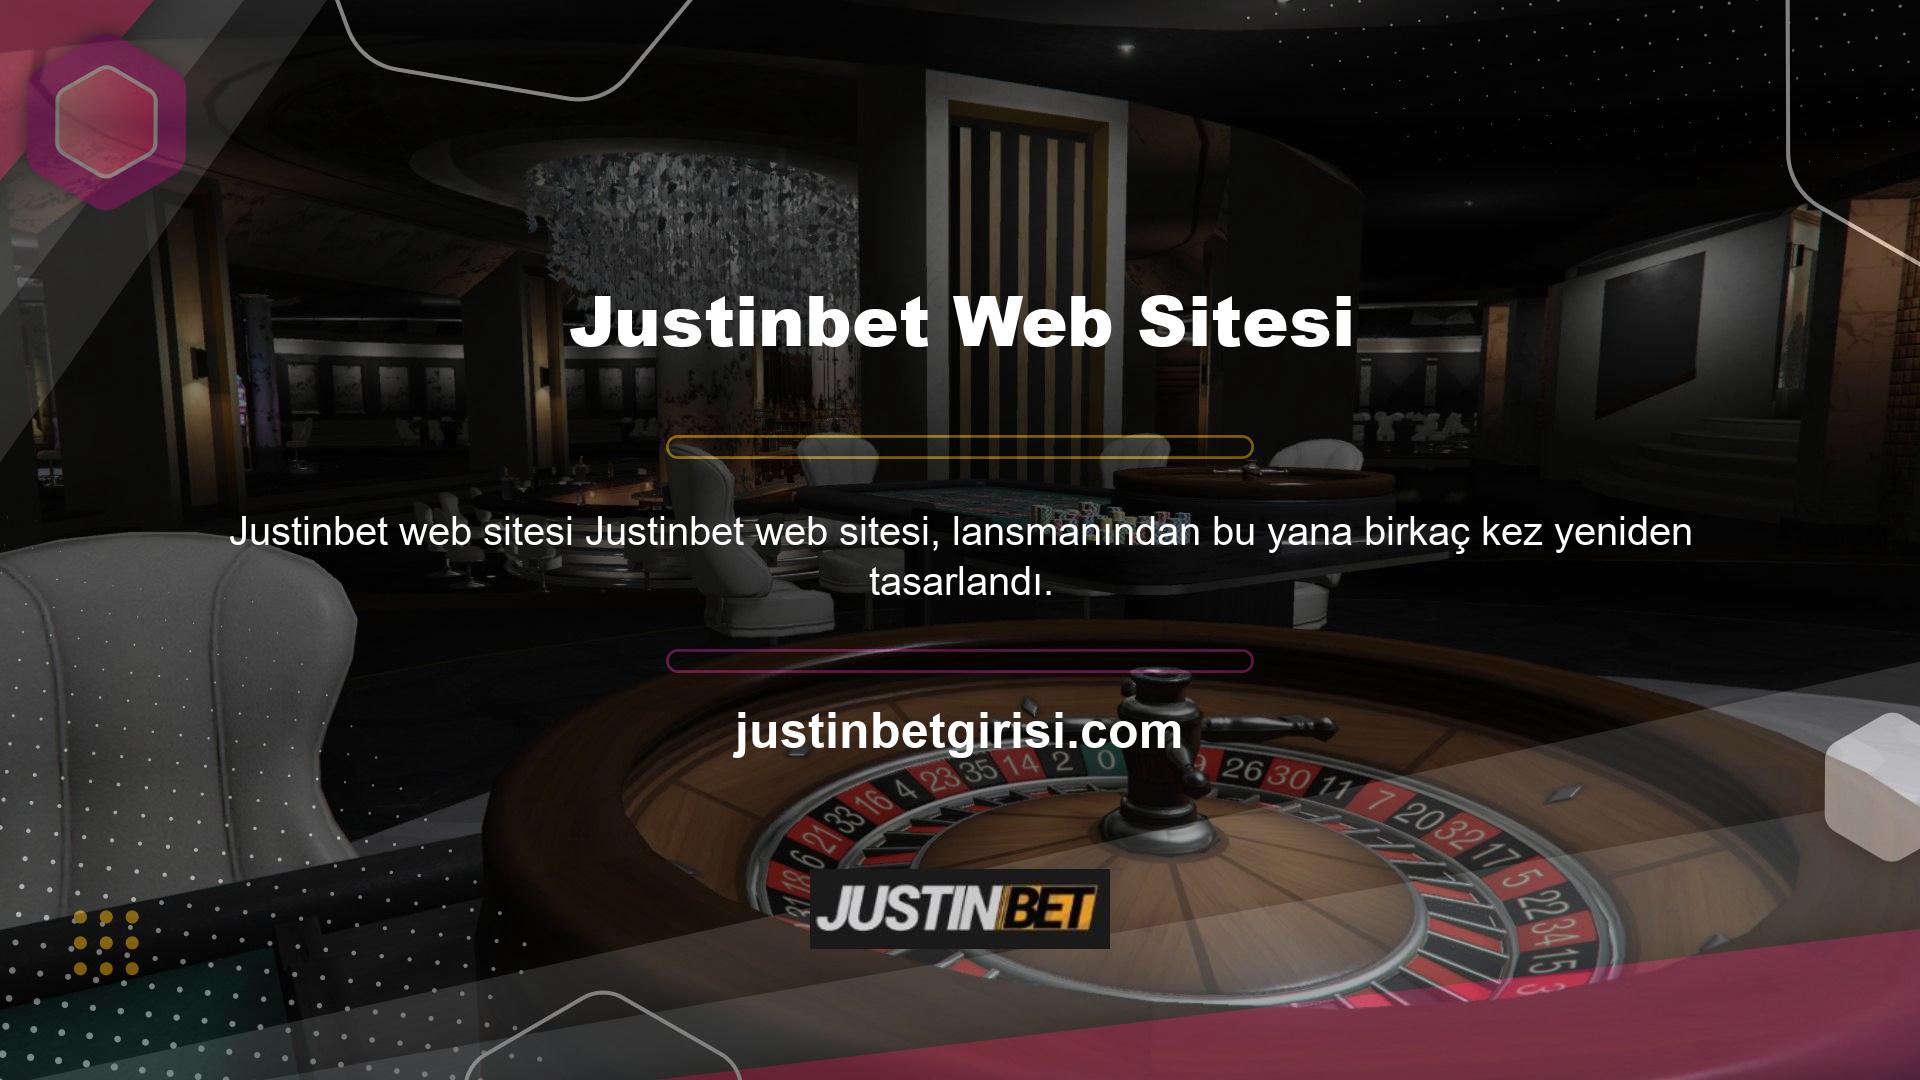 Yenilikçi bir bahis sitesi olan Justinbet, modern tasarımı ile beğeni toplamıştır